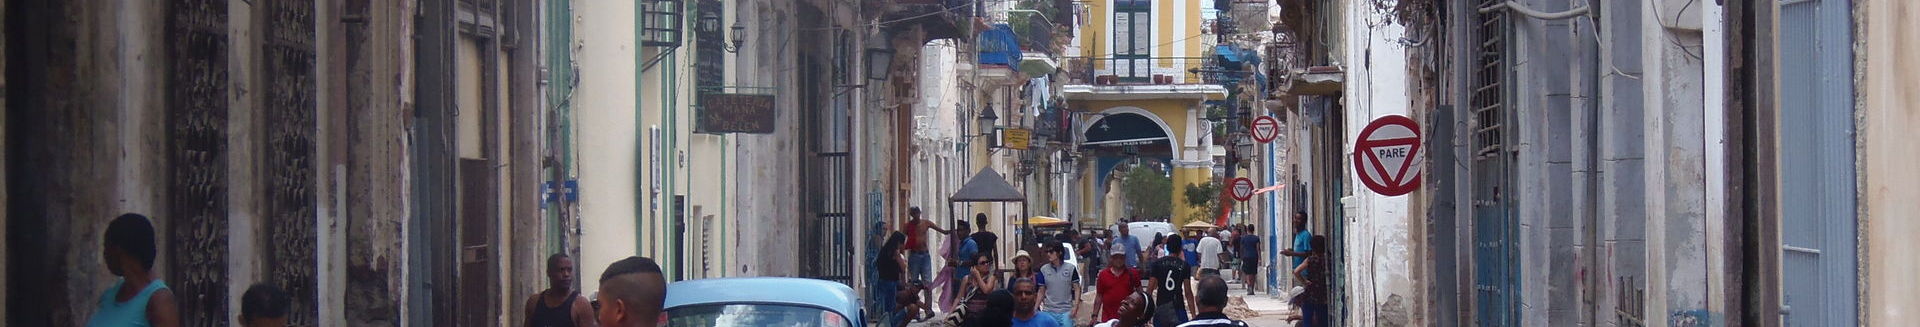 Habana Viejako kaleak